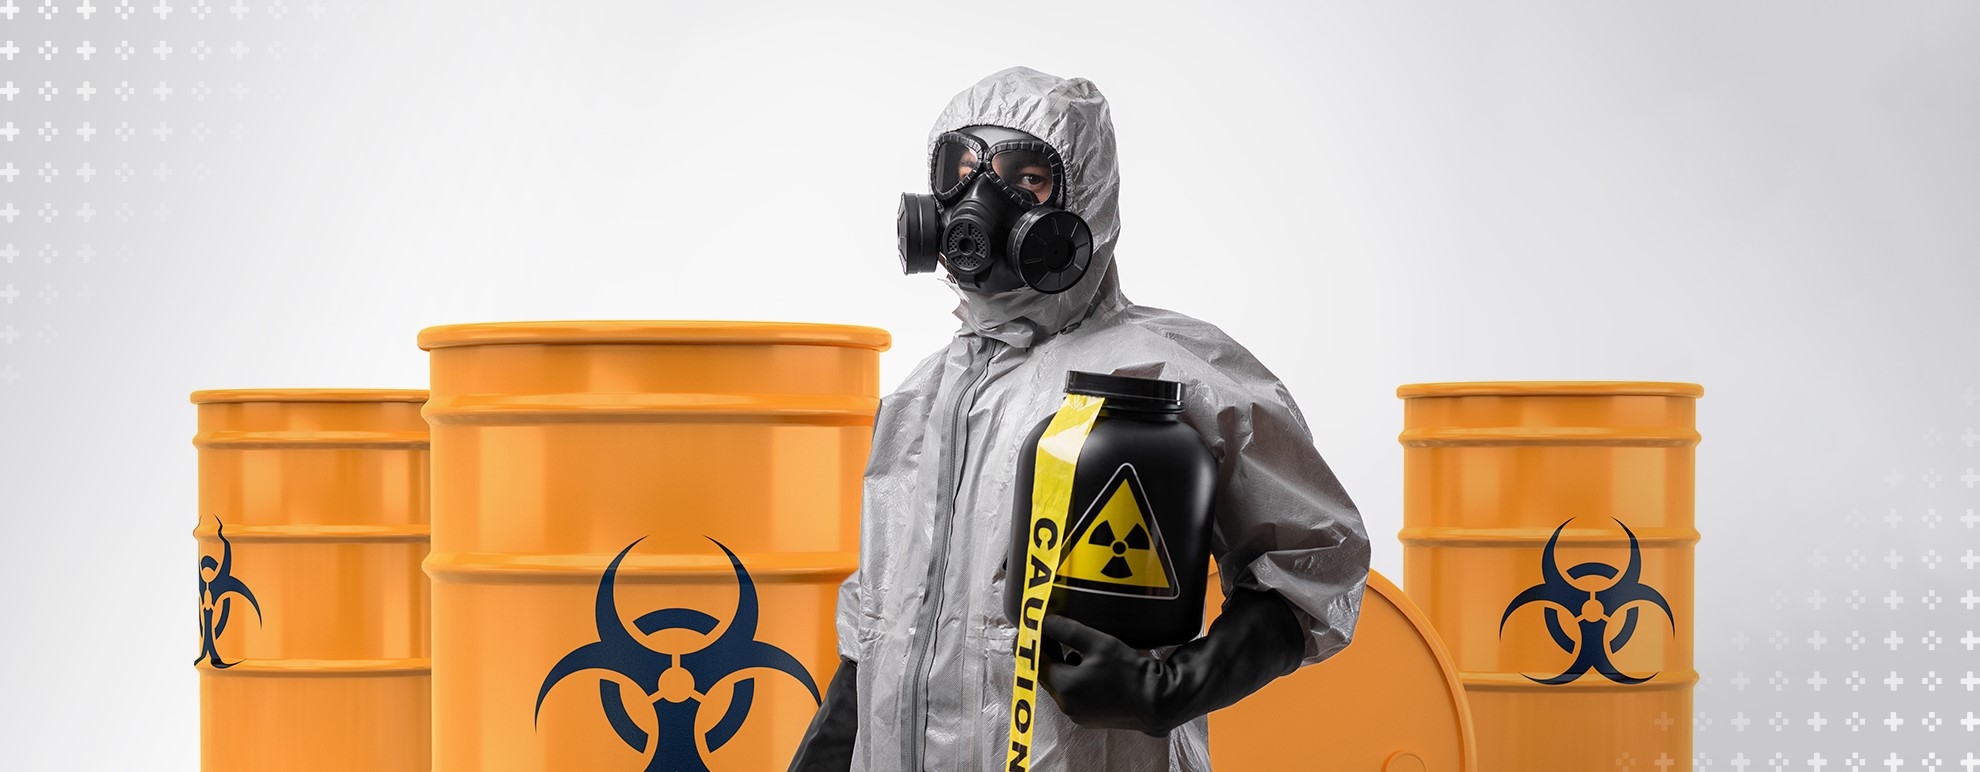 Imagem mostra uma pessoa vestindo um traje de proteção que a cobre completamente, enquanto segura um pote preto com o símbolo de radioatividade. Ao fundo, estão três barris laranjas também com o símbolo de radioatividade